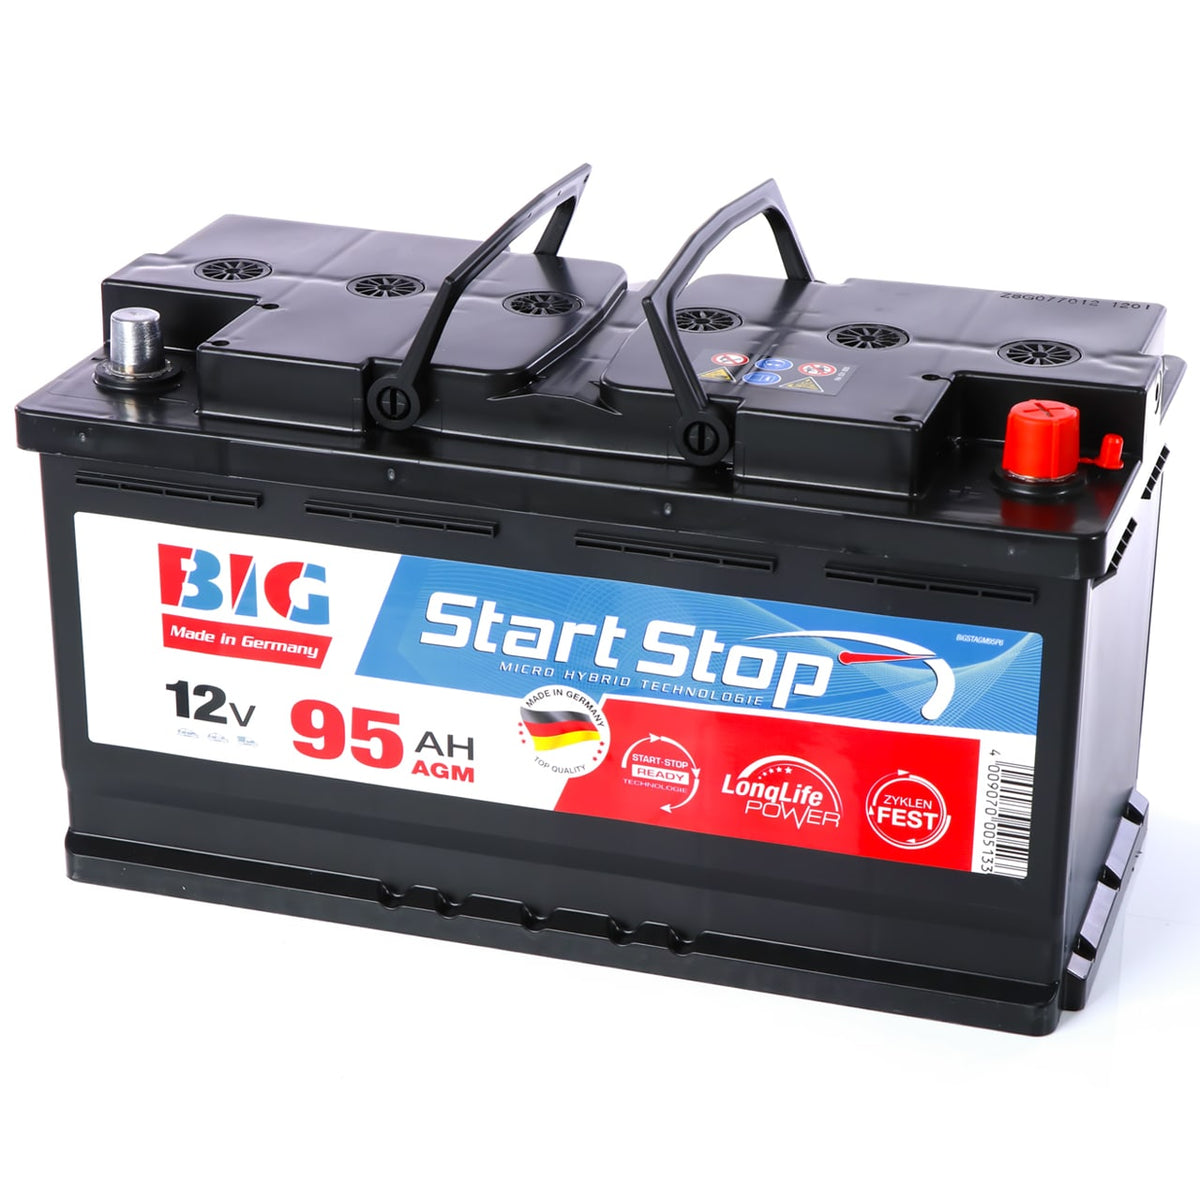 Kaufen Sie Vietnam Großhandels-Mf-batterie Für Auto-autobatterie Zum  Starten Der Auto-batterie 12v 90ah Starke Leistung und Autobatterie  Großhandelsanbietern zu einem Preis von 56.5 USD